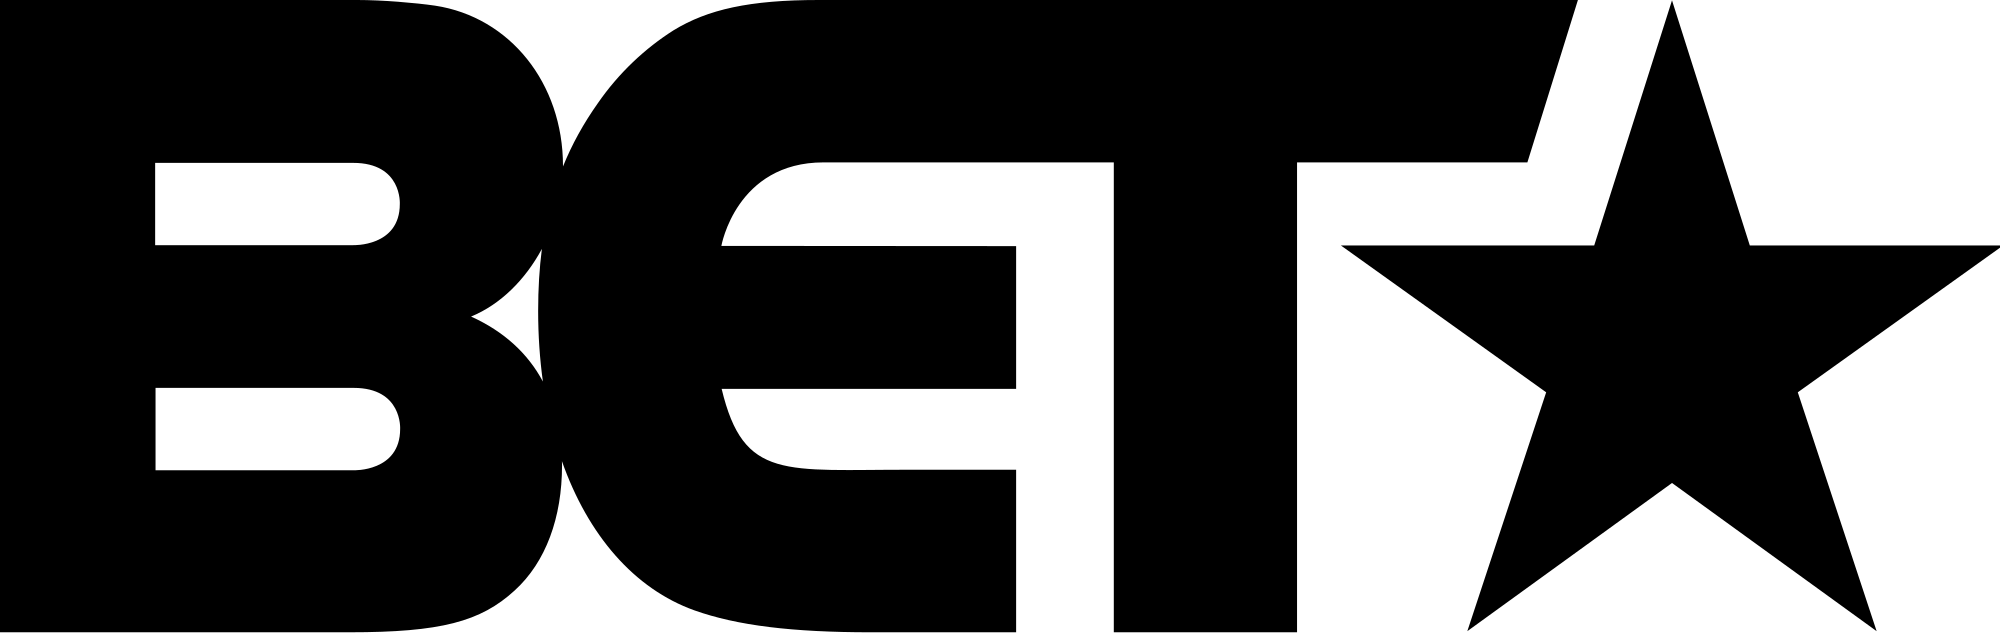 Altered Black Logo Vector PNG - 110028